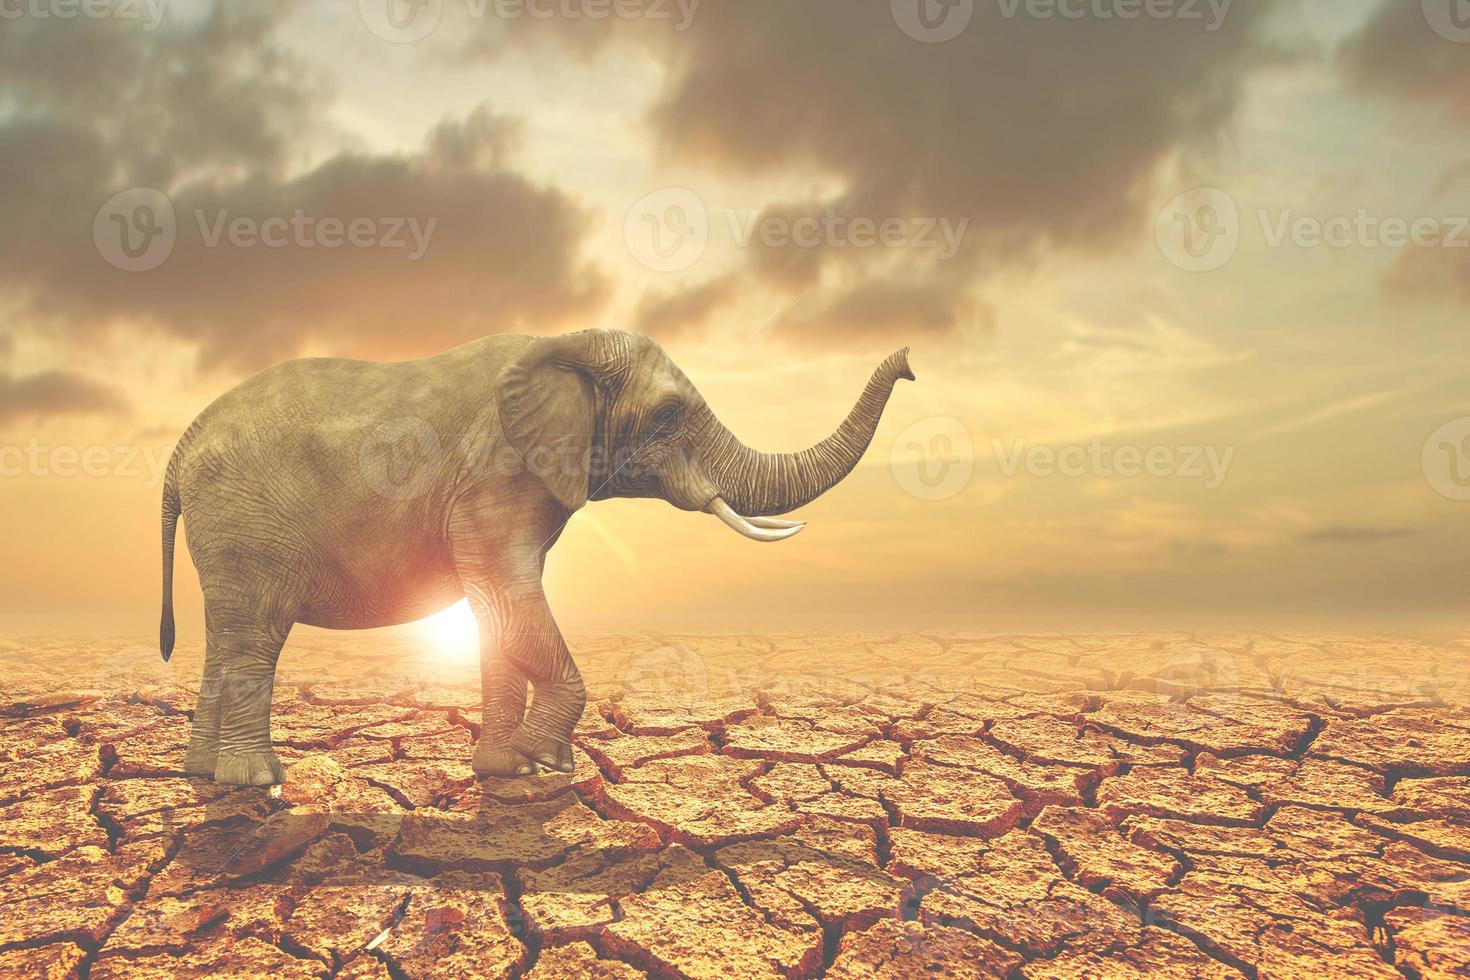 concepto de conservación forestal para la vida silvestre. un elefante que busca comida en una tierra árida carece de agua. foto